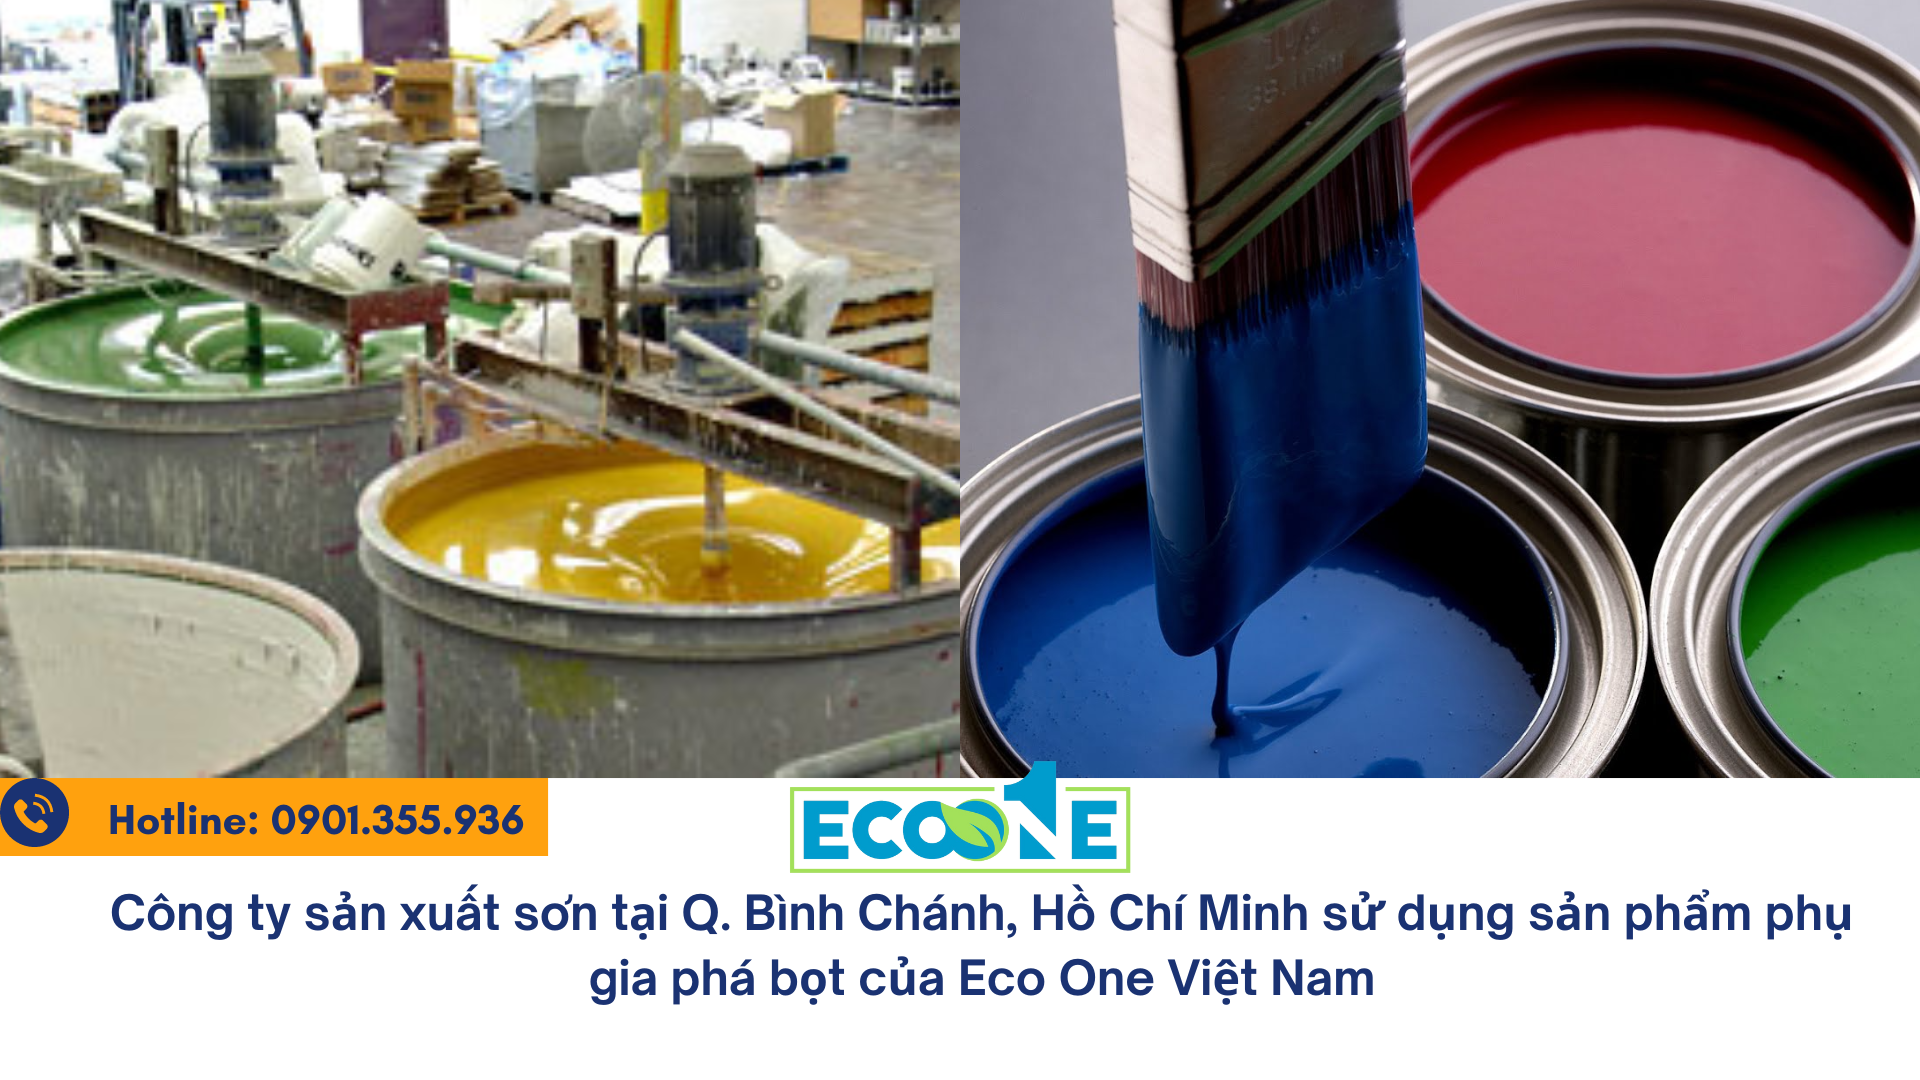 Công ty sản xuất sơn tại Q. Bình Chánh, Hồ Chí Minh sử dụng sản phẩm phụ gia phá bọt của Eco One Việt Nam